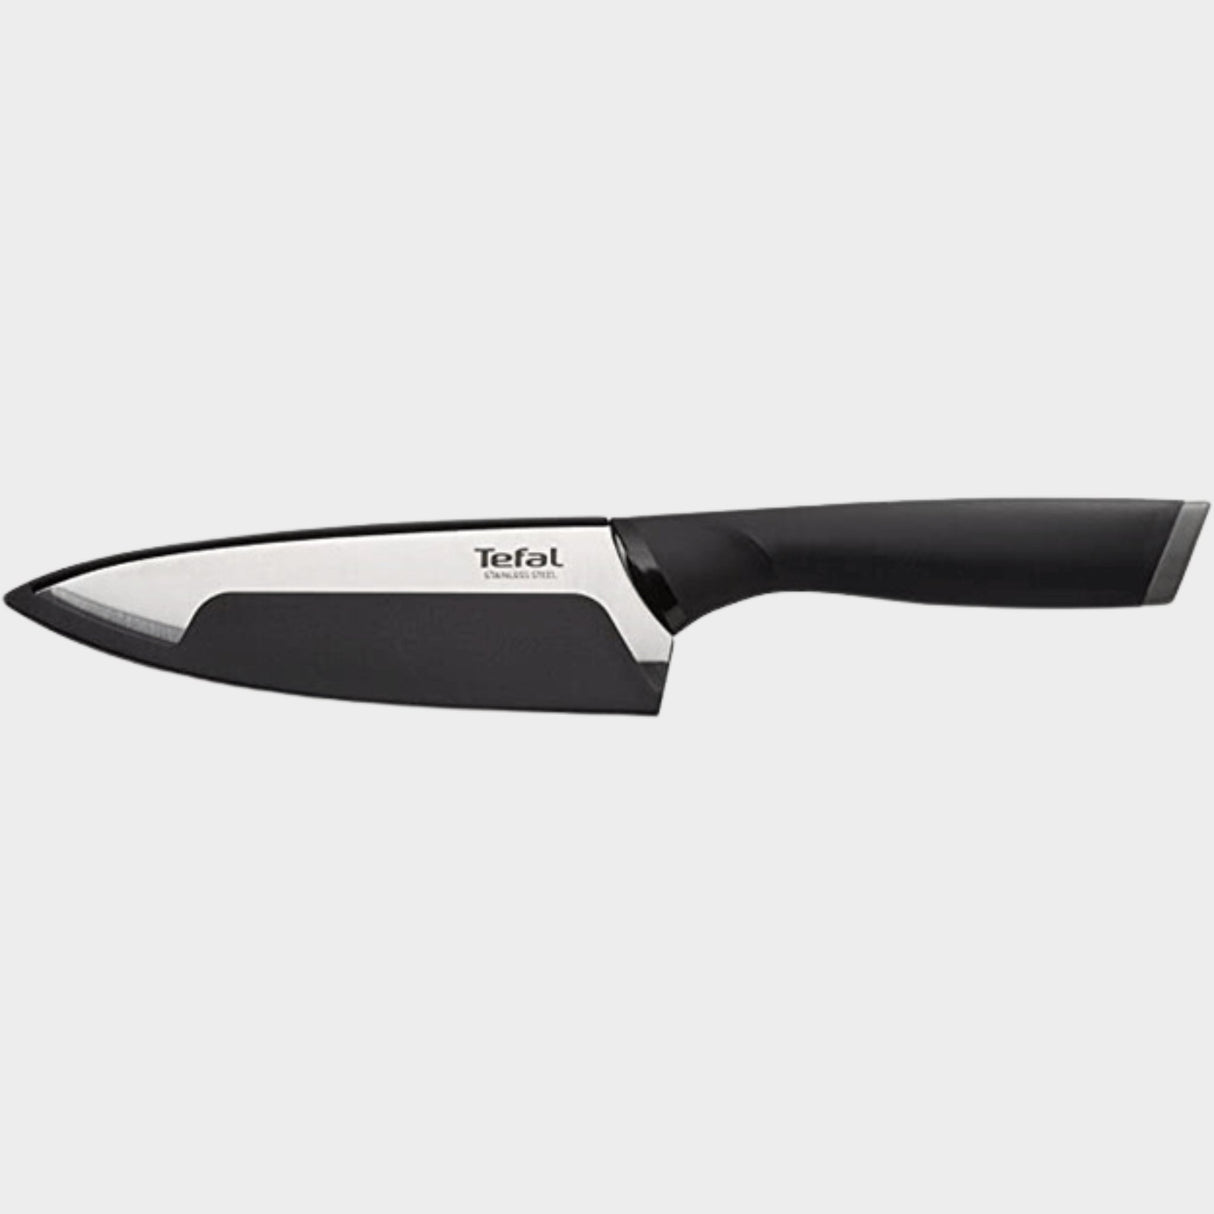 Tefal 15cm Comfort Chef Knife K2213114 - Black - KWT Tech Mart